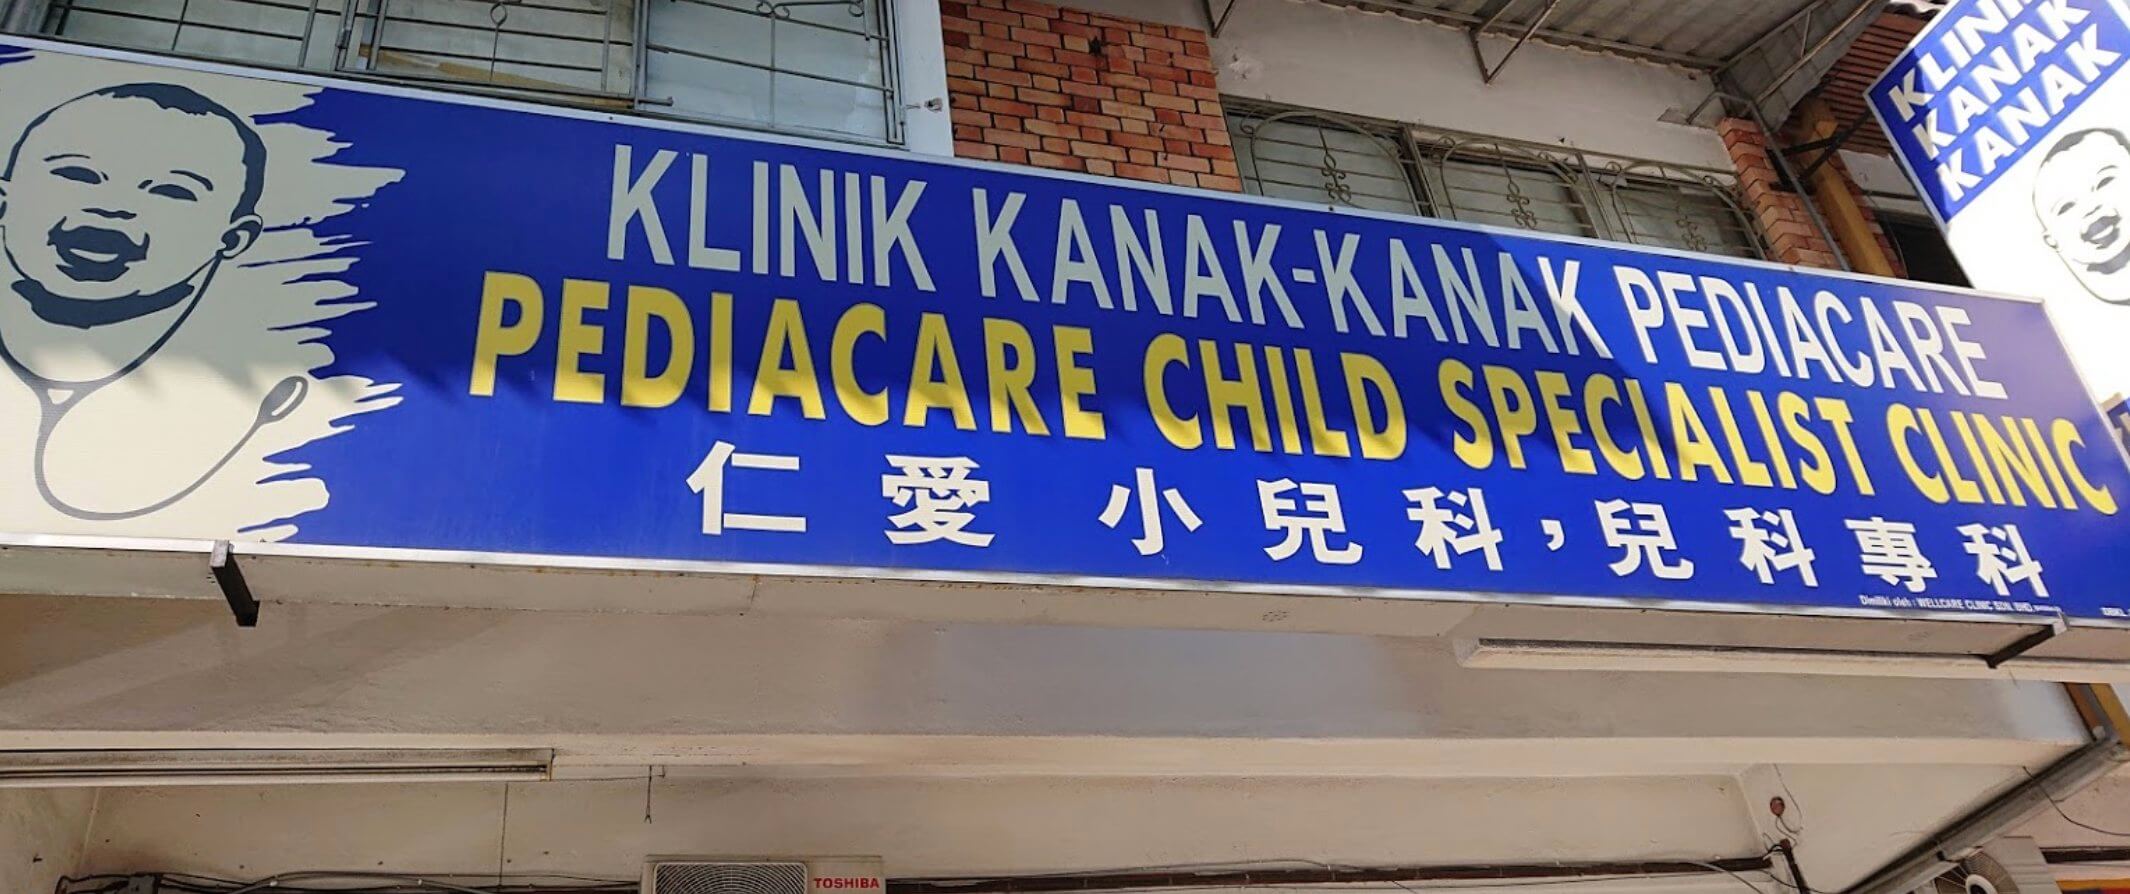 Klinik Pakar Kanak Kanak Pediacare, KL